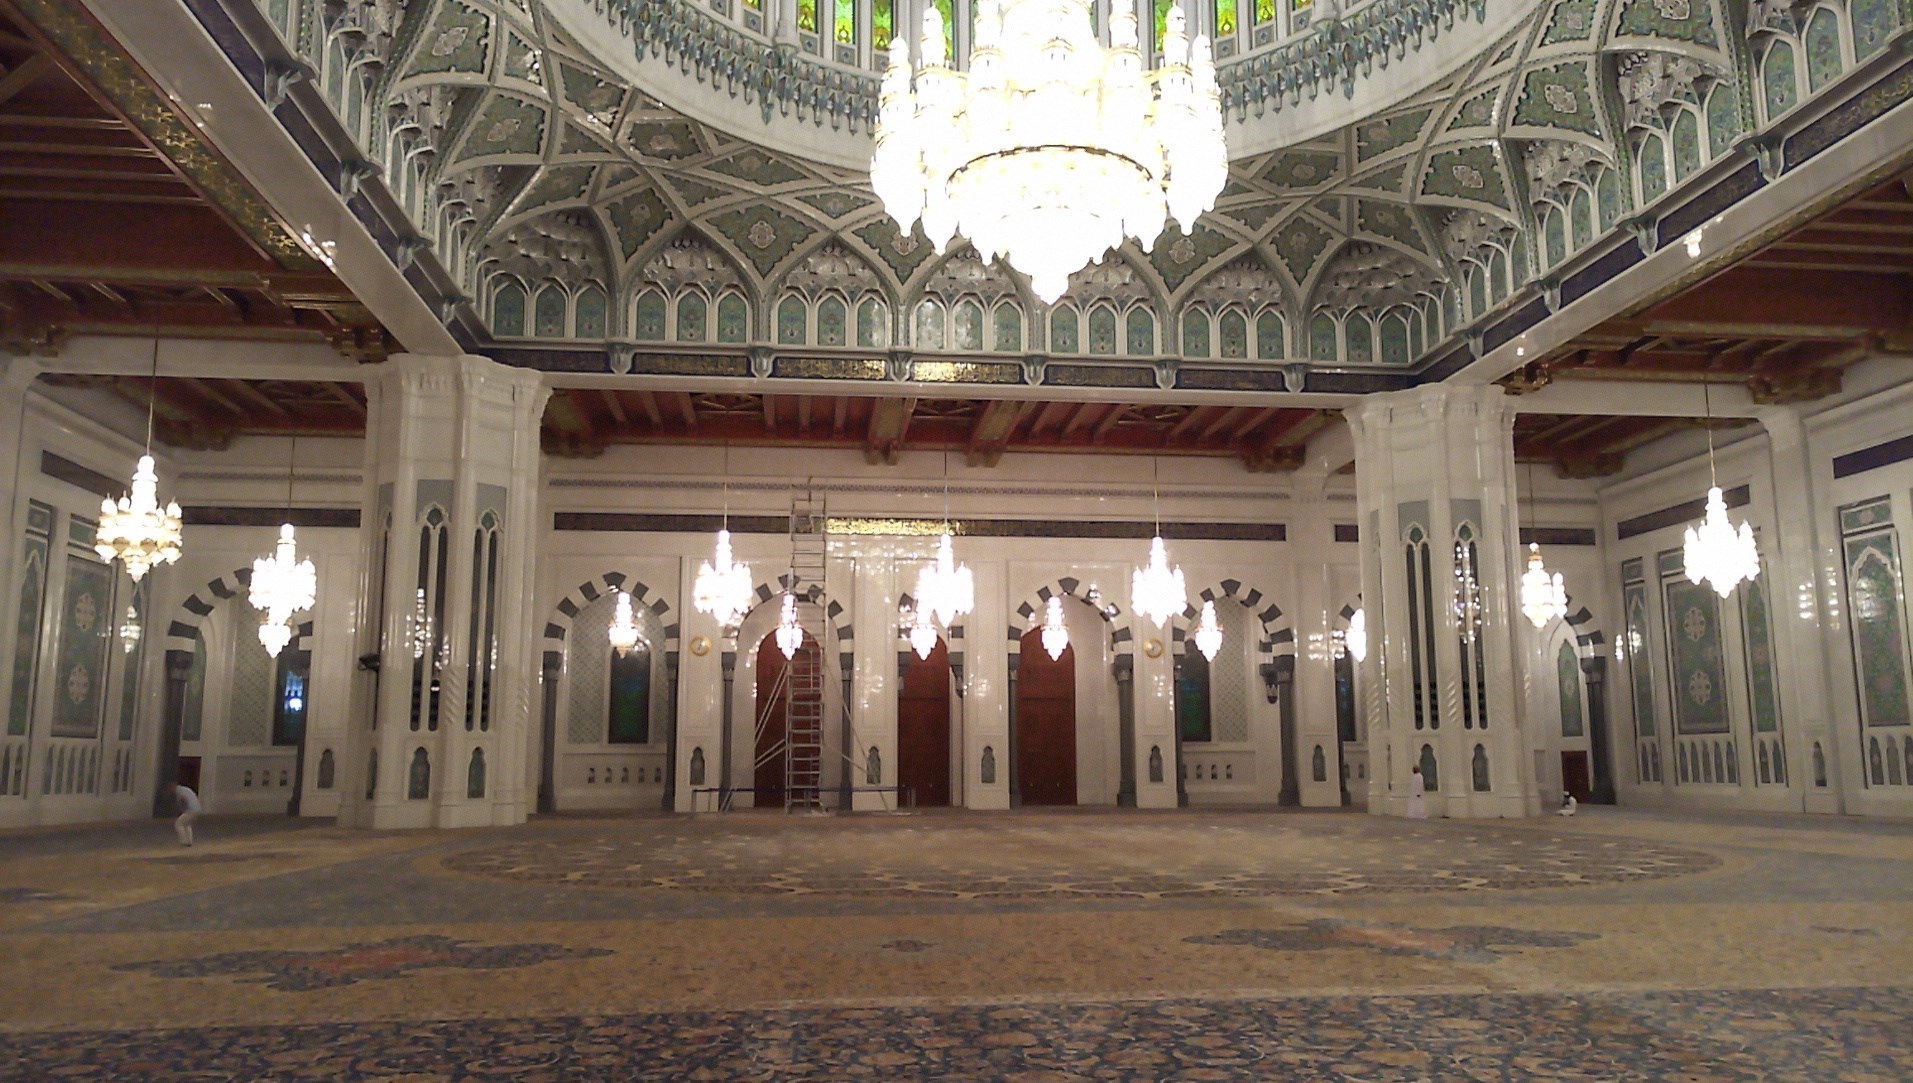 فرش ایرانی در یکی از زیباترین مساجد جهان + تصاویر 